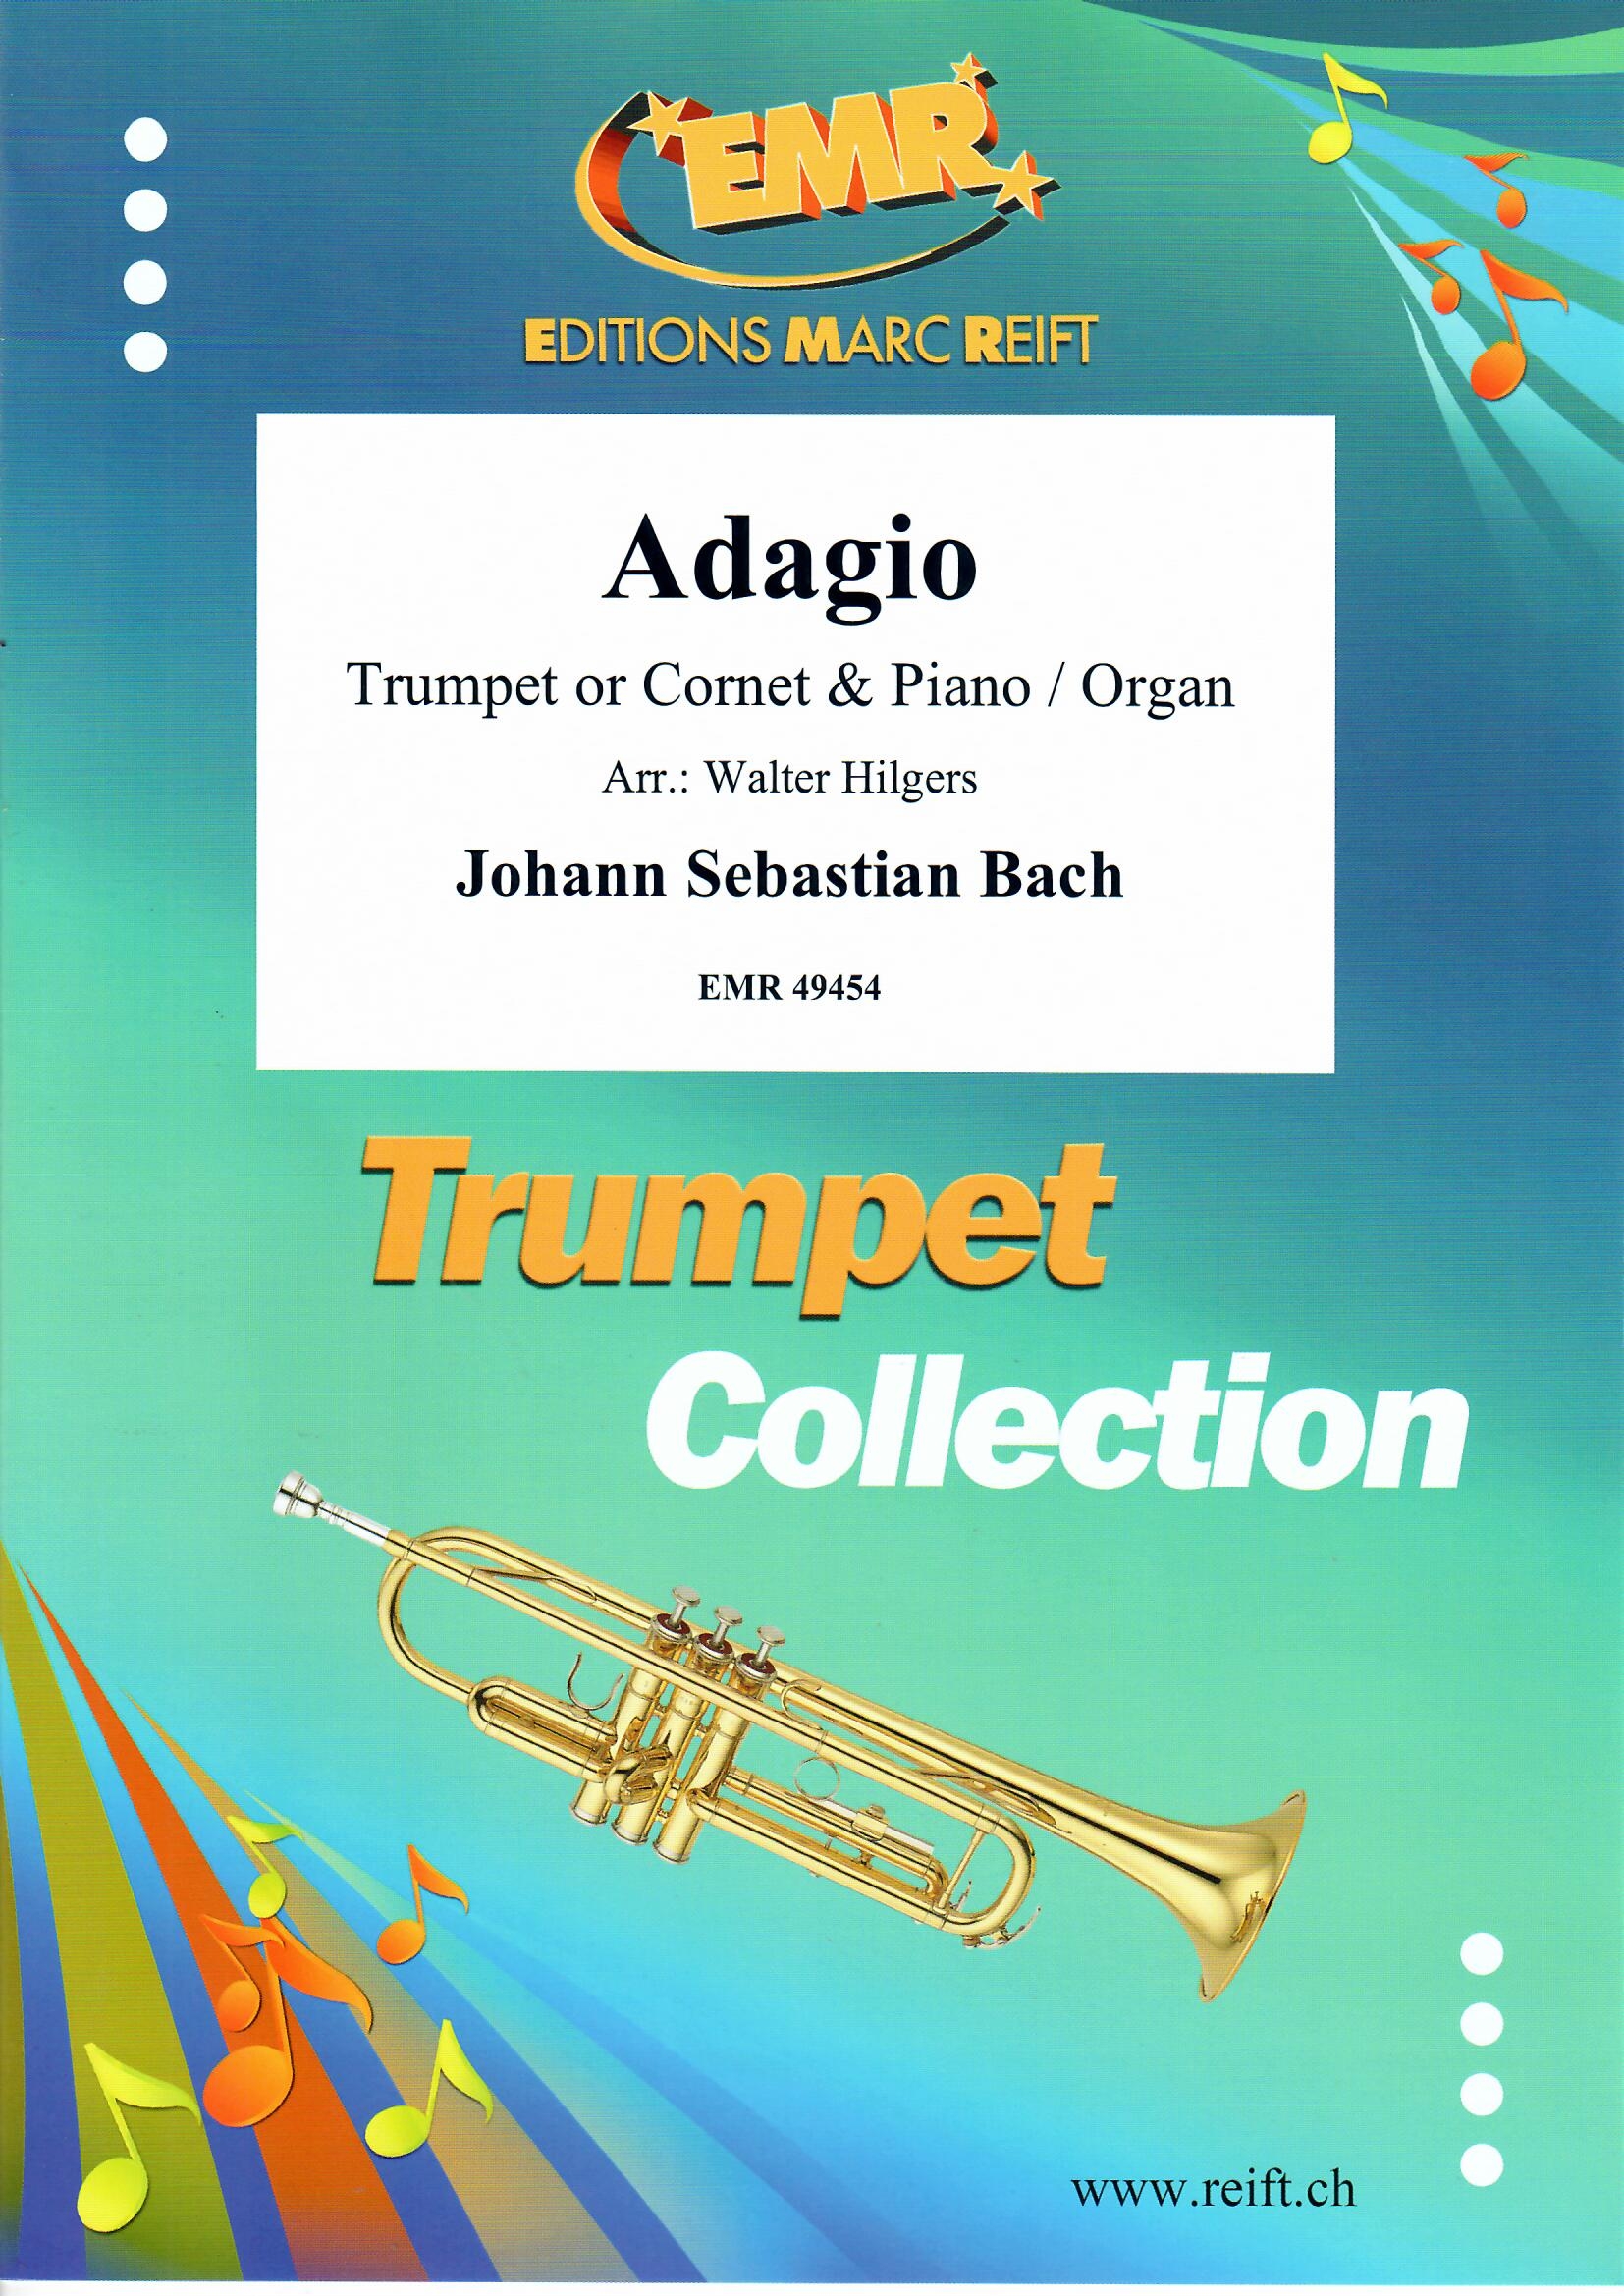 ADAGIO - Trumpet & Organ